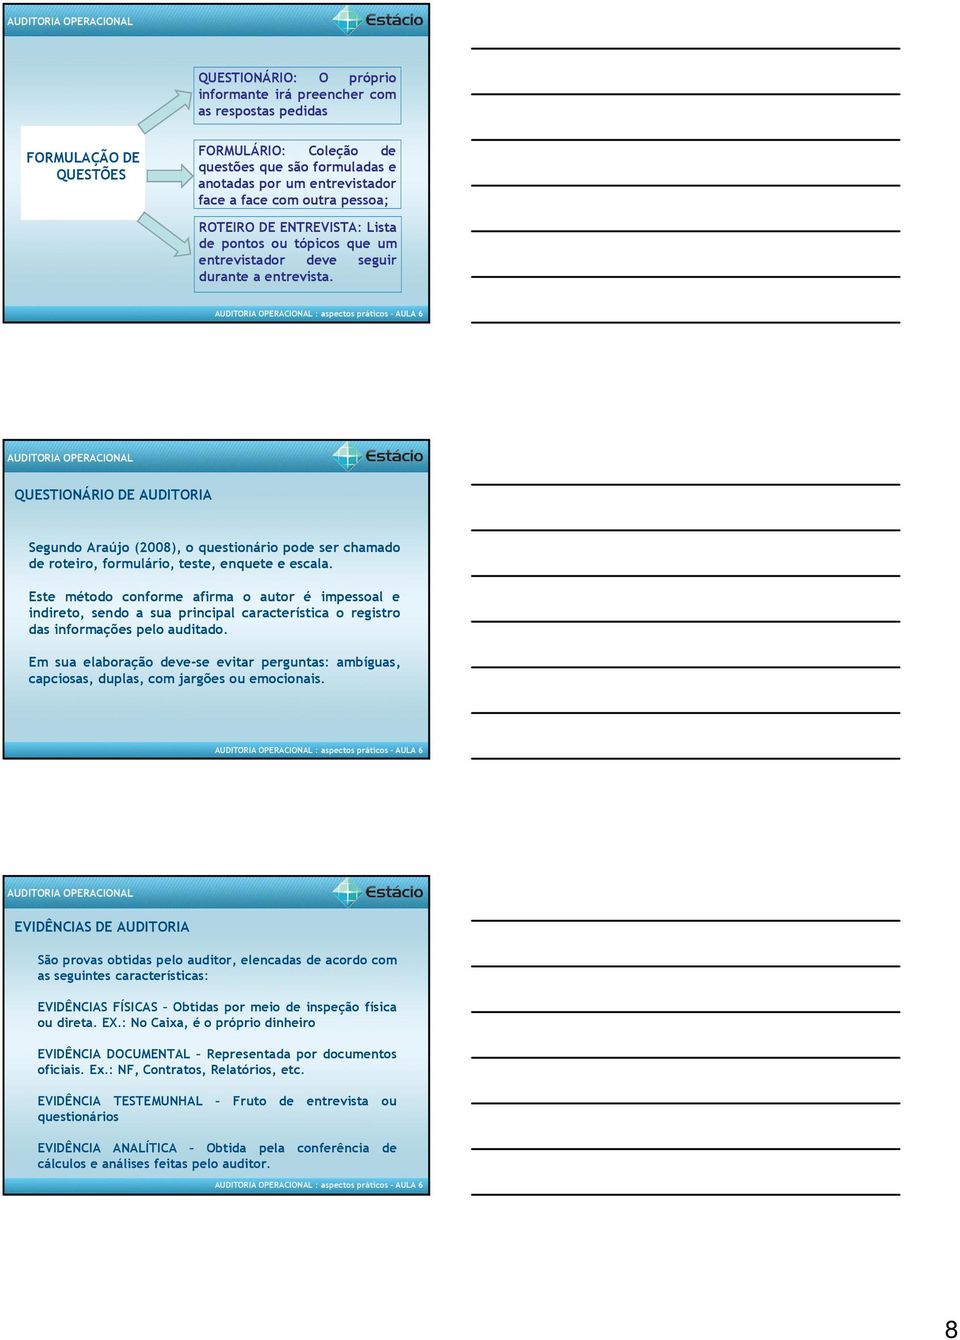 QUESTIONÁRIO DE AUDITORIA Segundo Araújo (2008), o questionário pode ser chamado de roteiro, formulário, teste, enquete e escala.